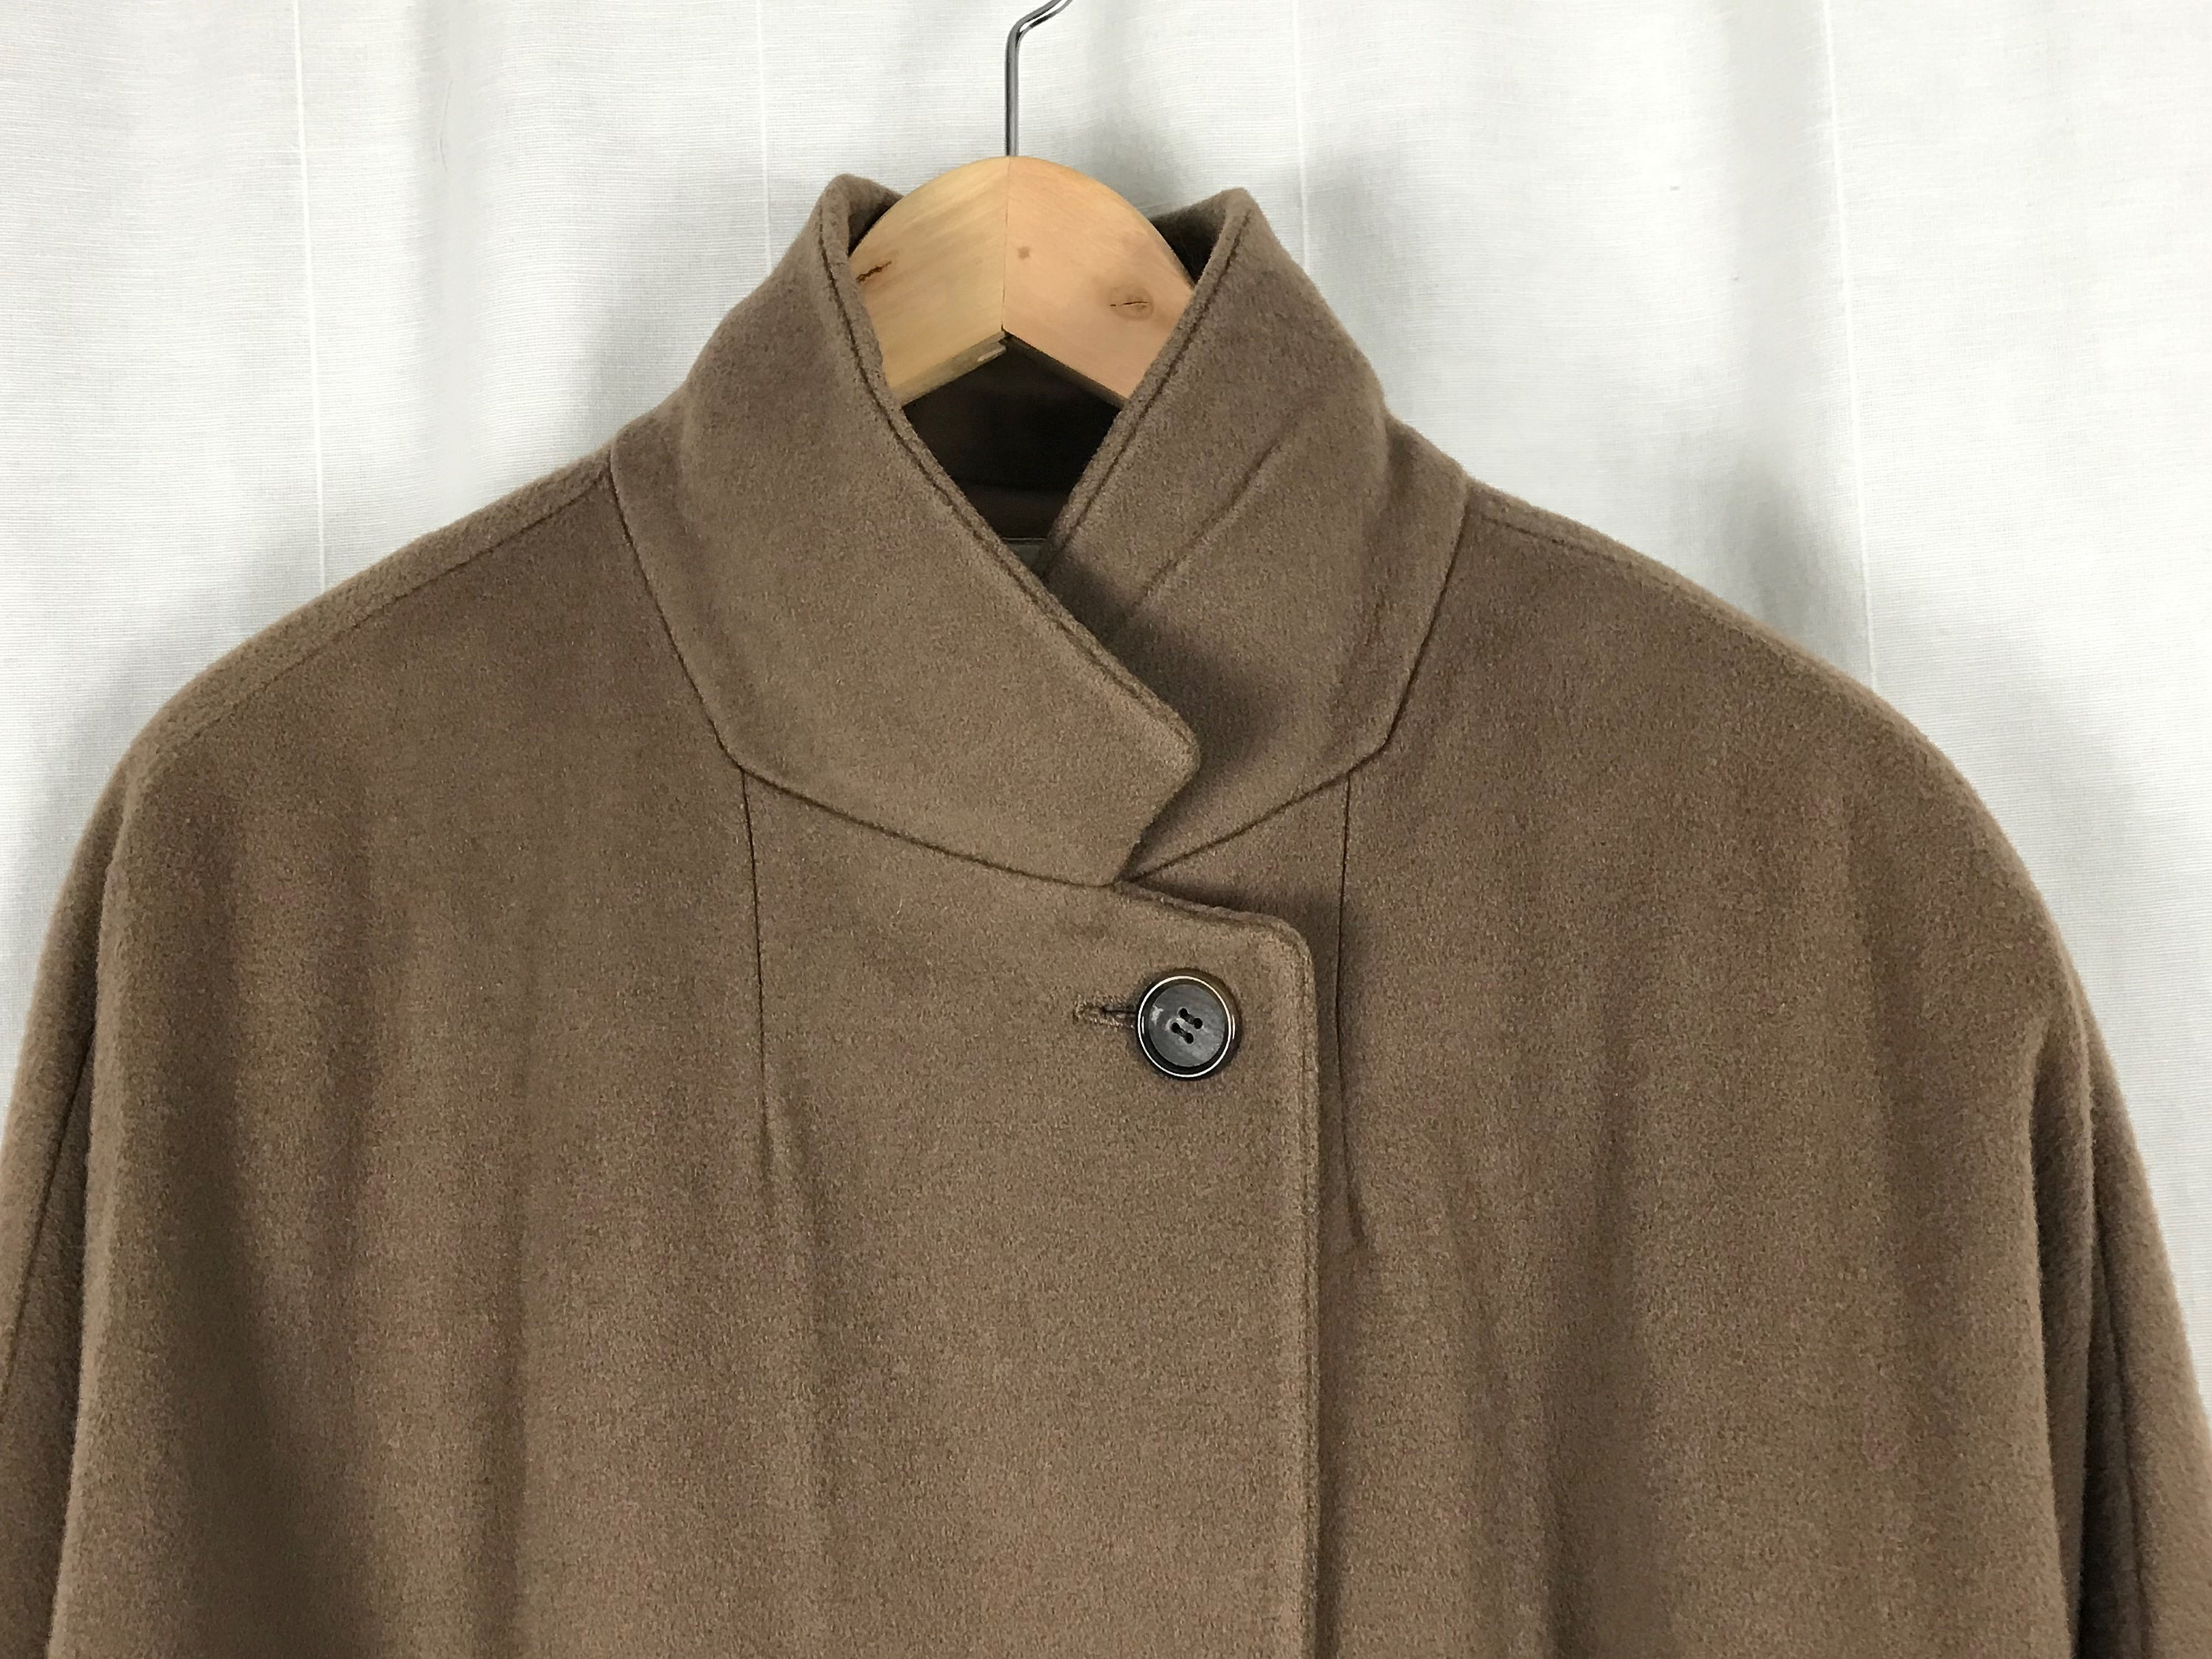 Vintage Coat Calvin Klein Full-Length Wool Coat in | Etsy